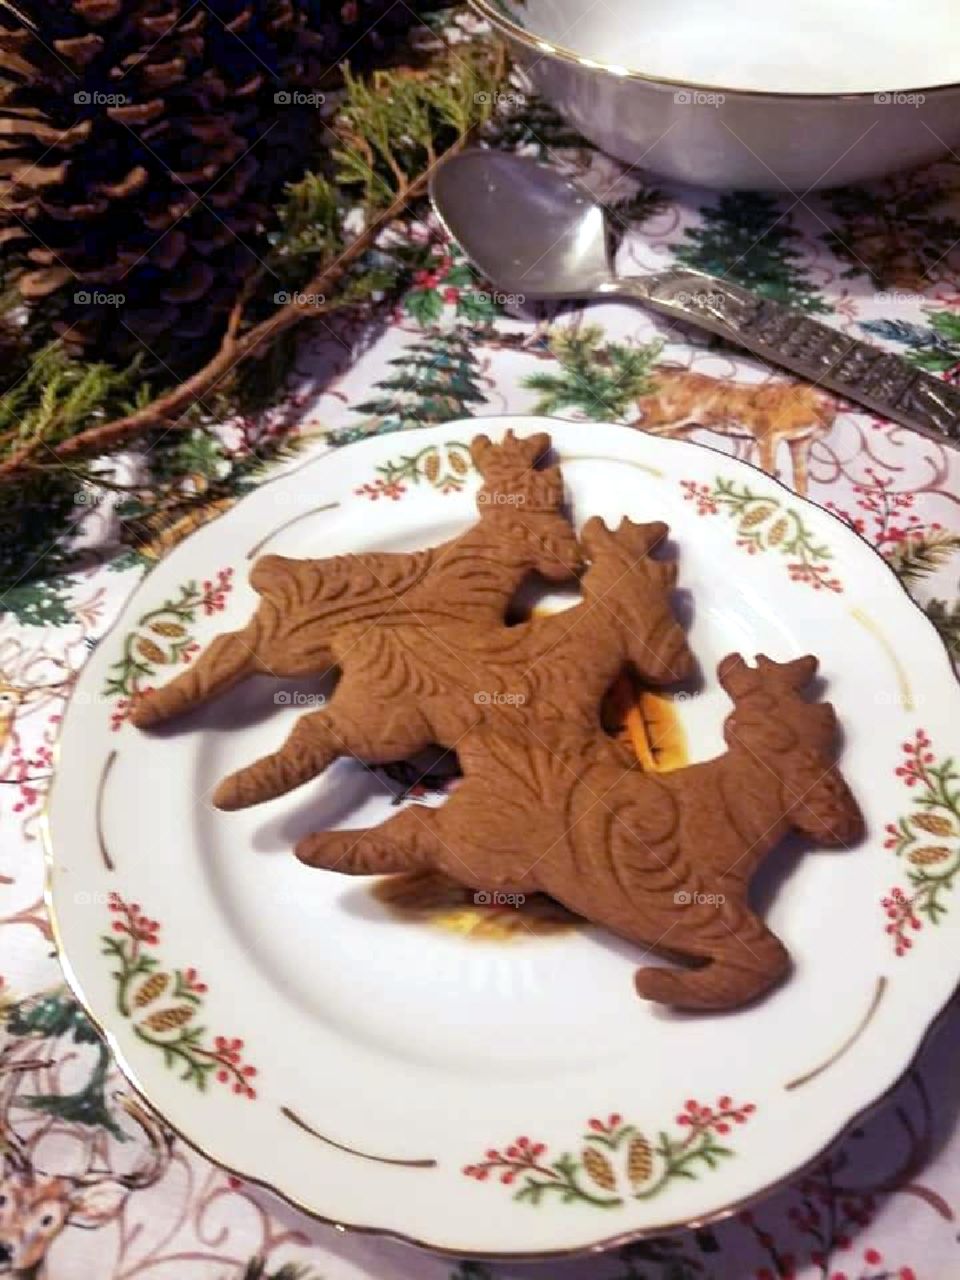 Three gingerbread reindeer cookies